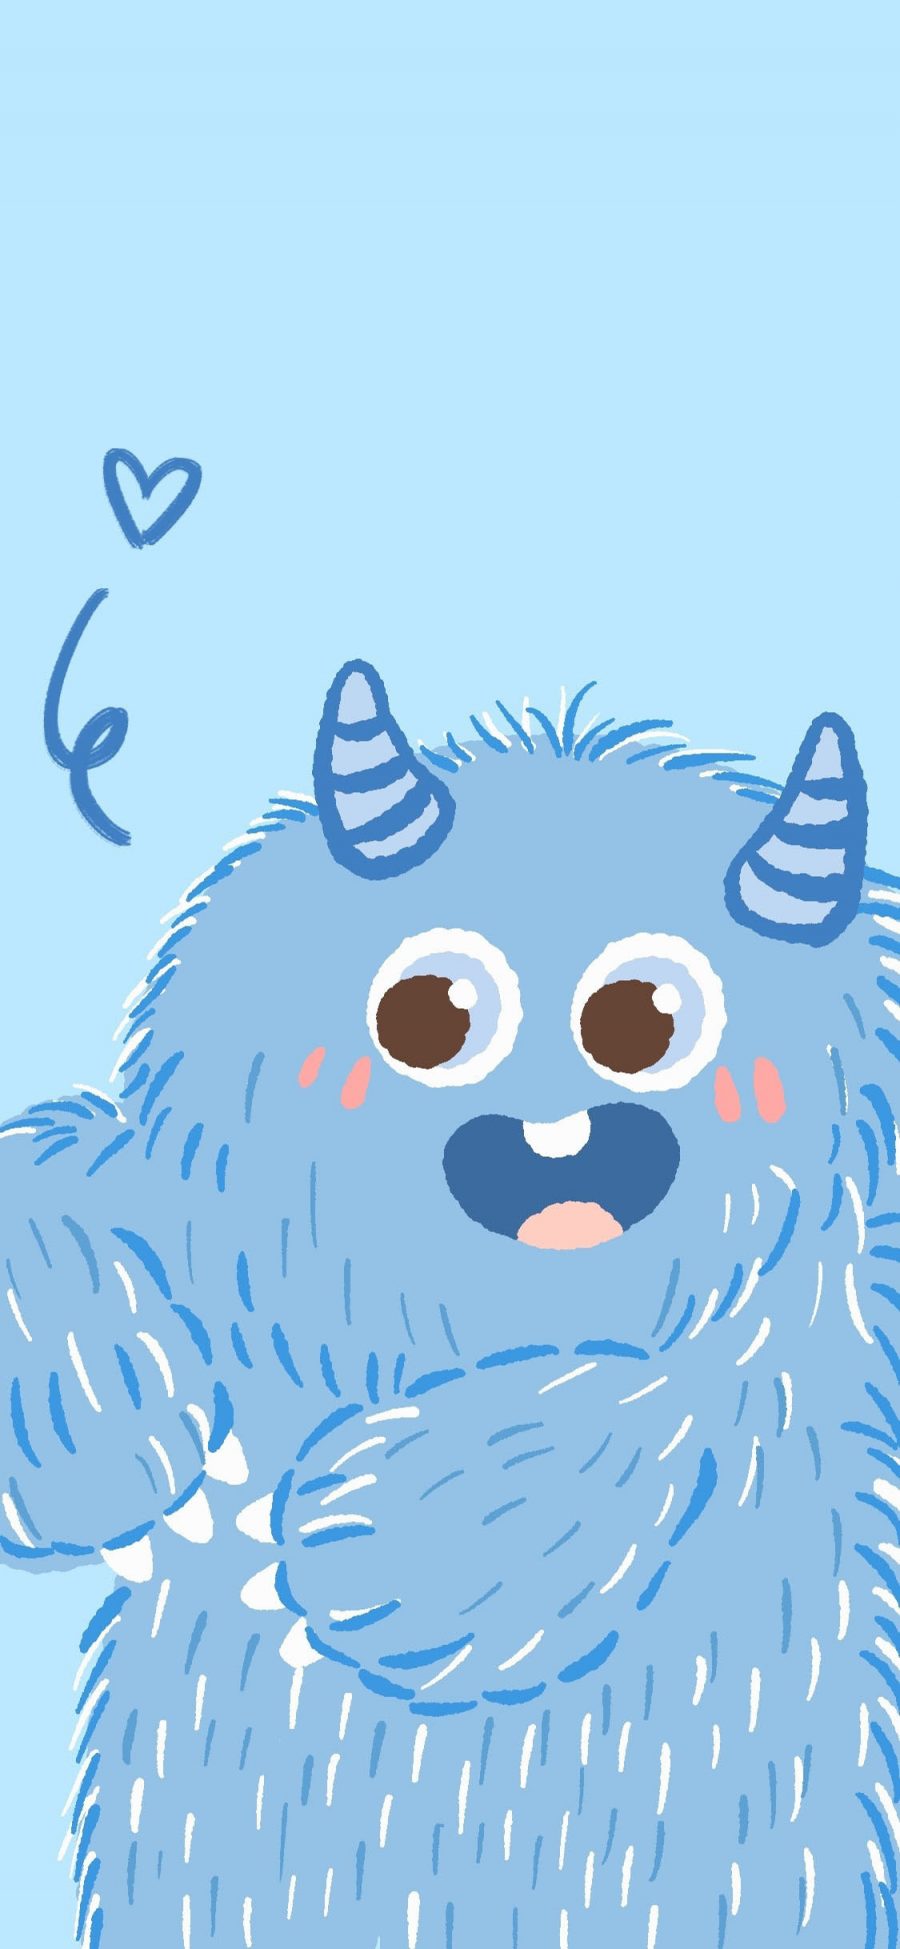 [2436×1125]小怪兽 可爱 尖牙 蓝色 苹果手机动漫壁纸图片